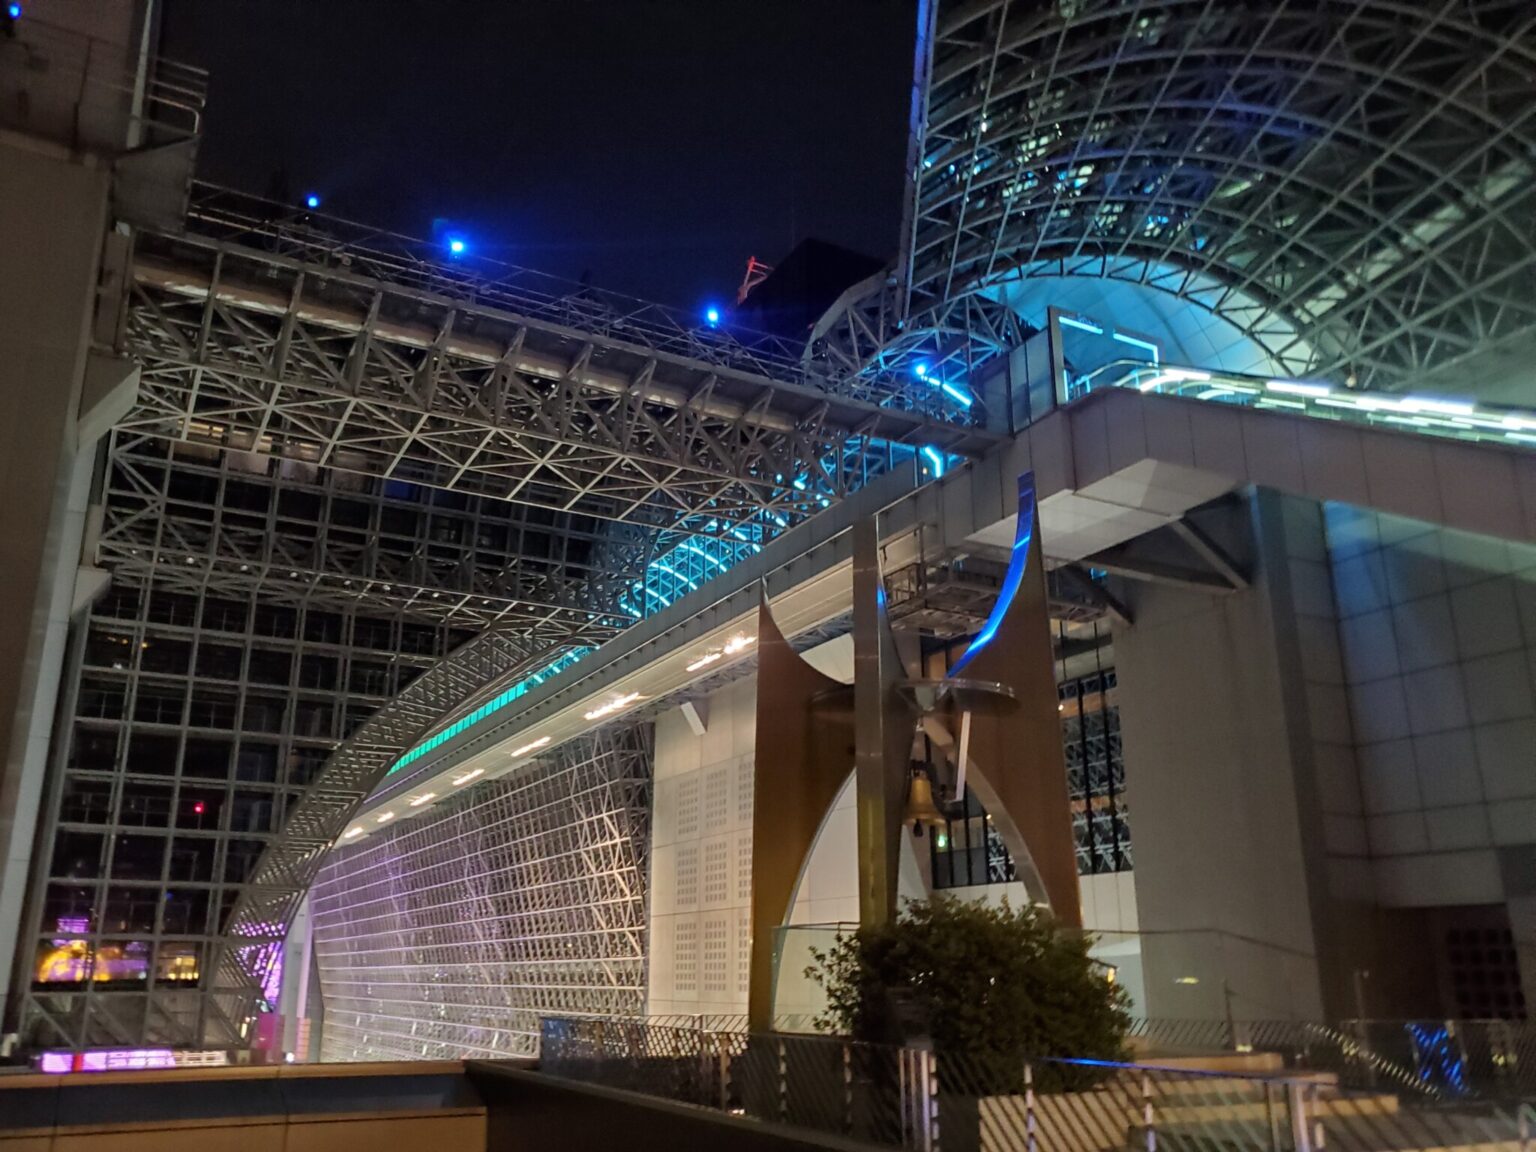 夜は特にテーマパークに来たような気分になります。〈京都駅ビル〉のおもしろい構造がさらに際立って見えるんです。